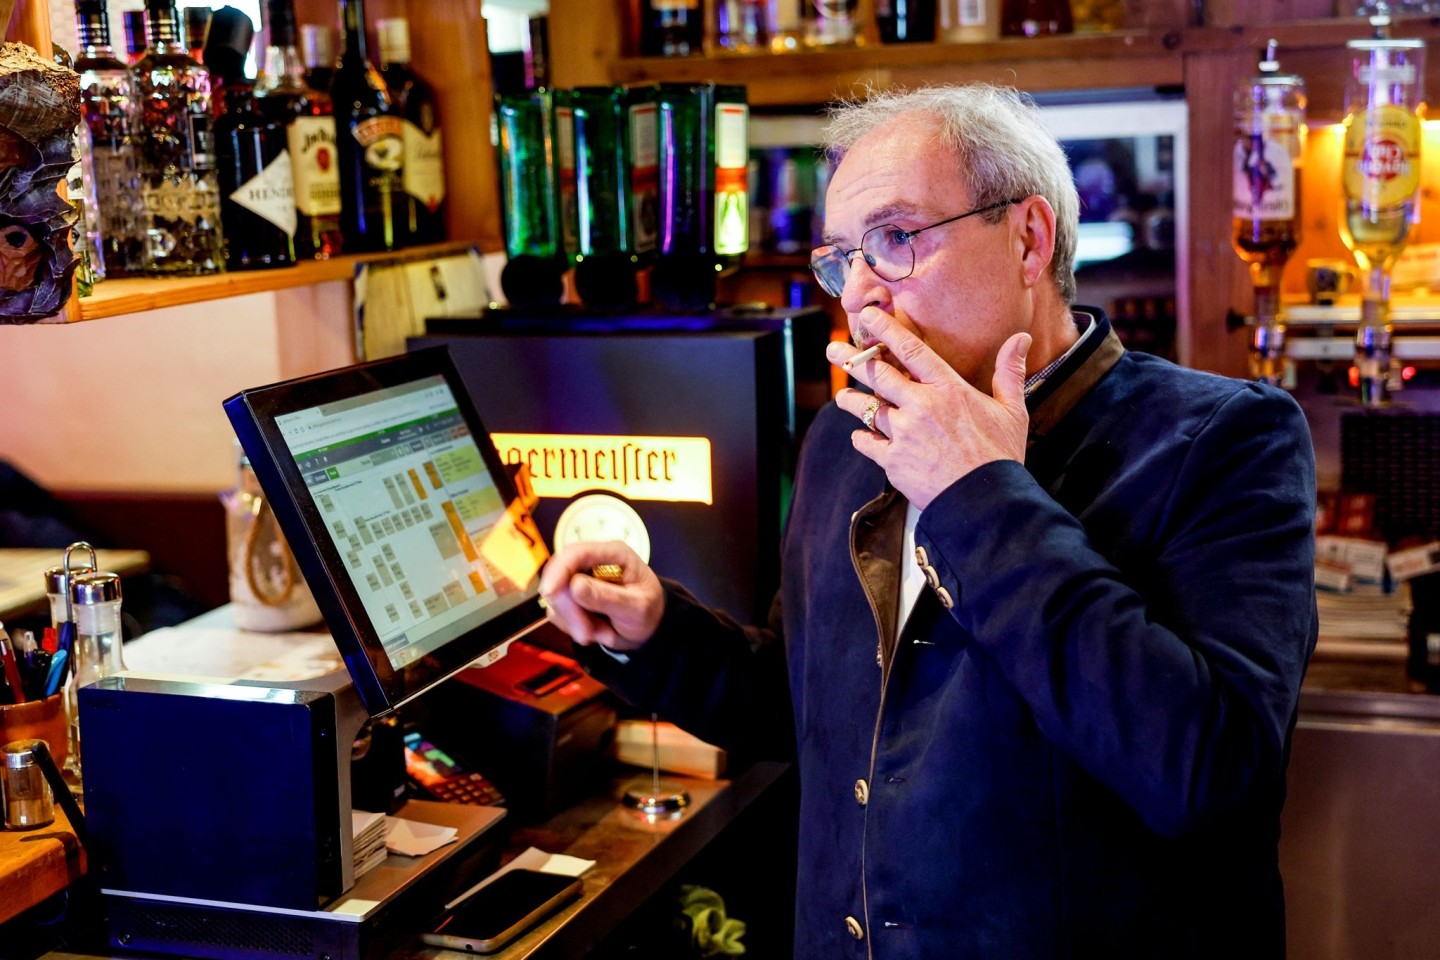 Peter Krall, Inhaber des «Hofbräu Raucher Stüberl» in Hamburg, raucht am Tresen seines Lokals eine Zigarette.